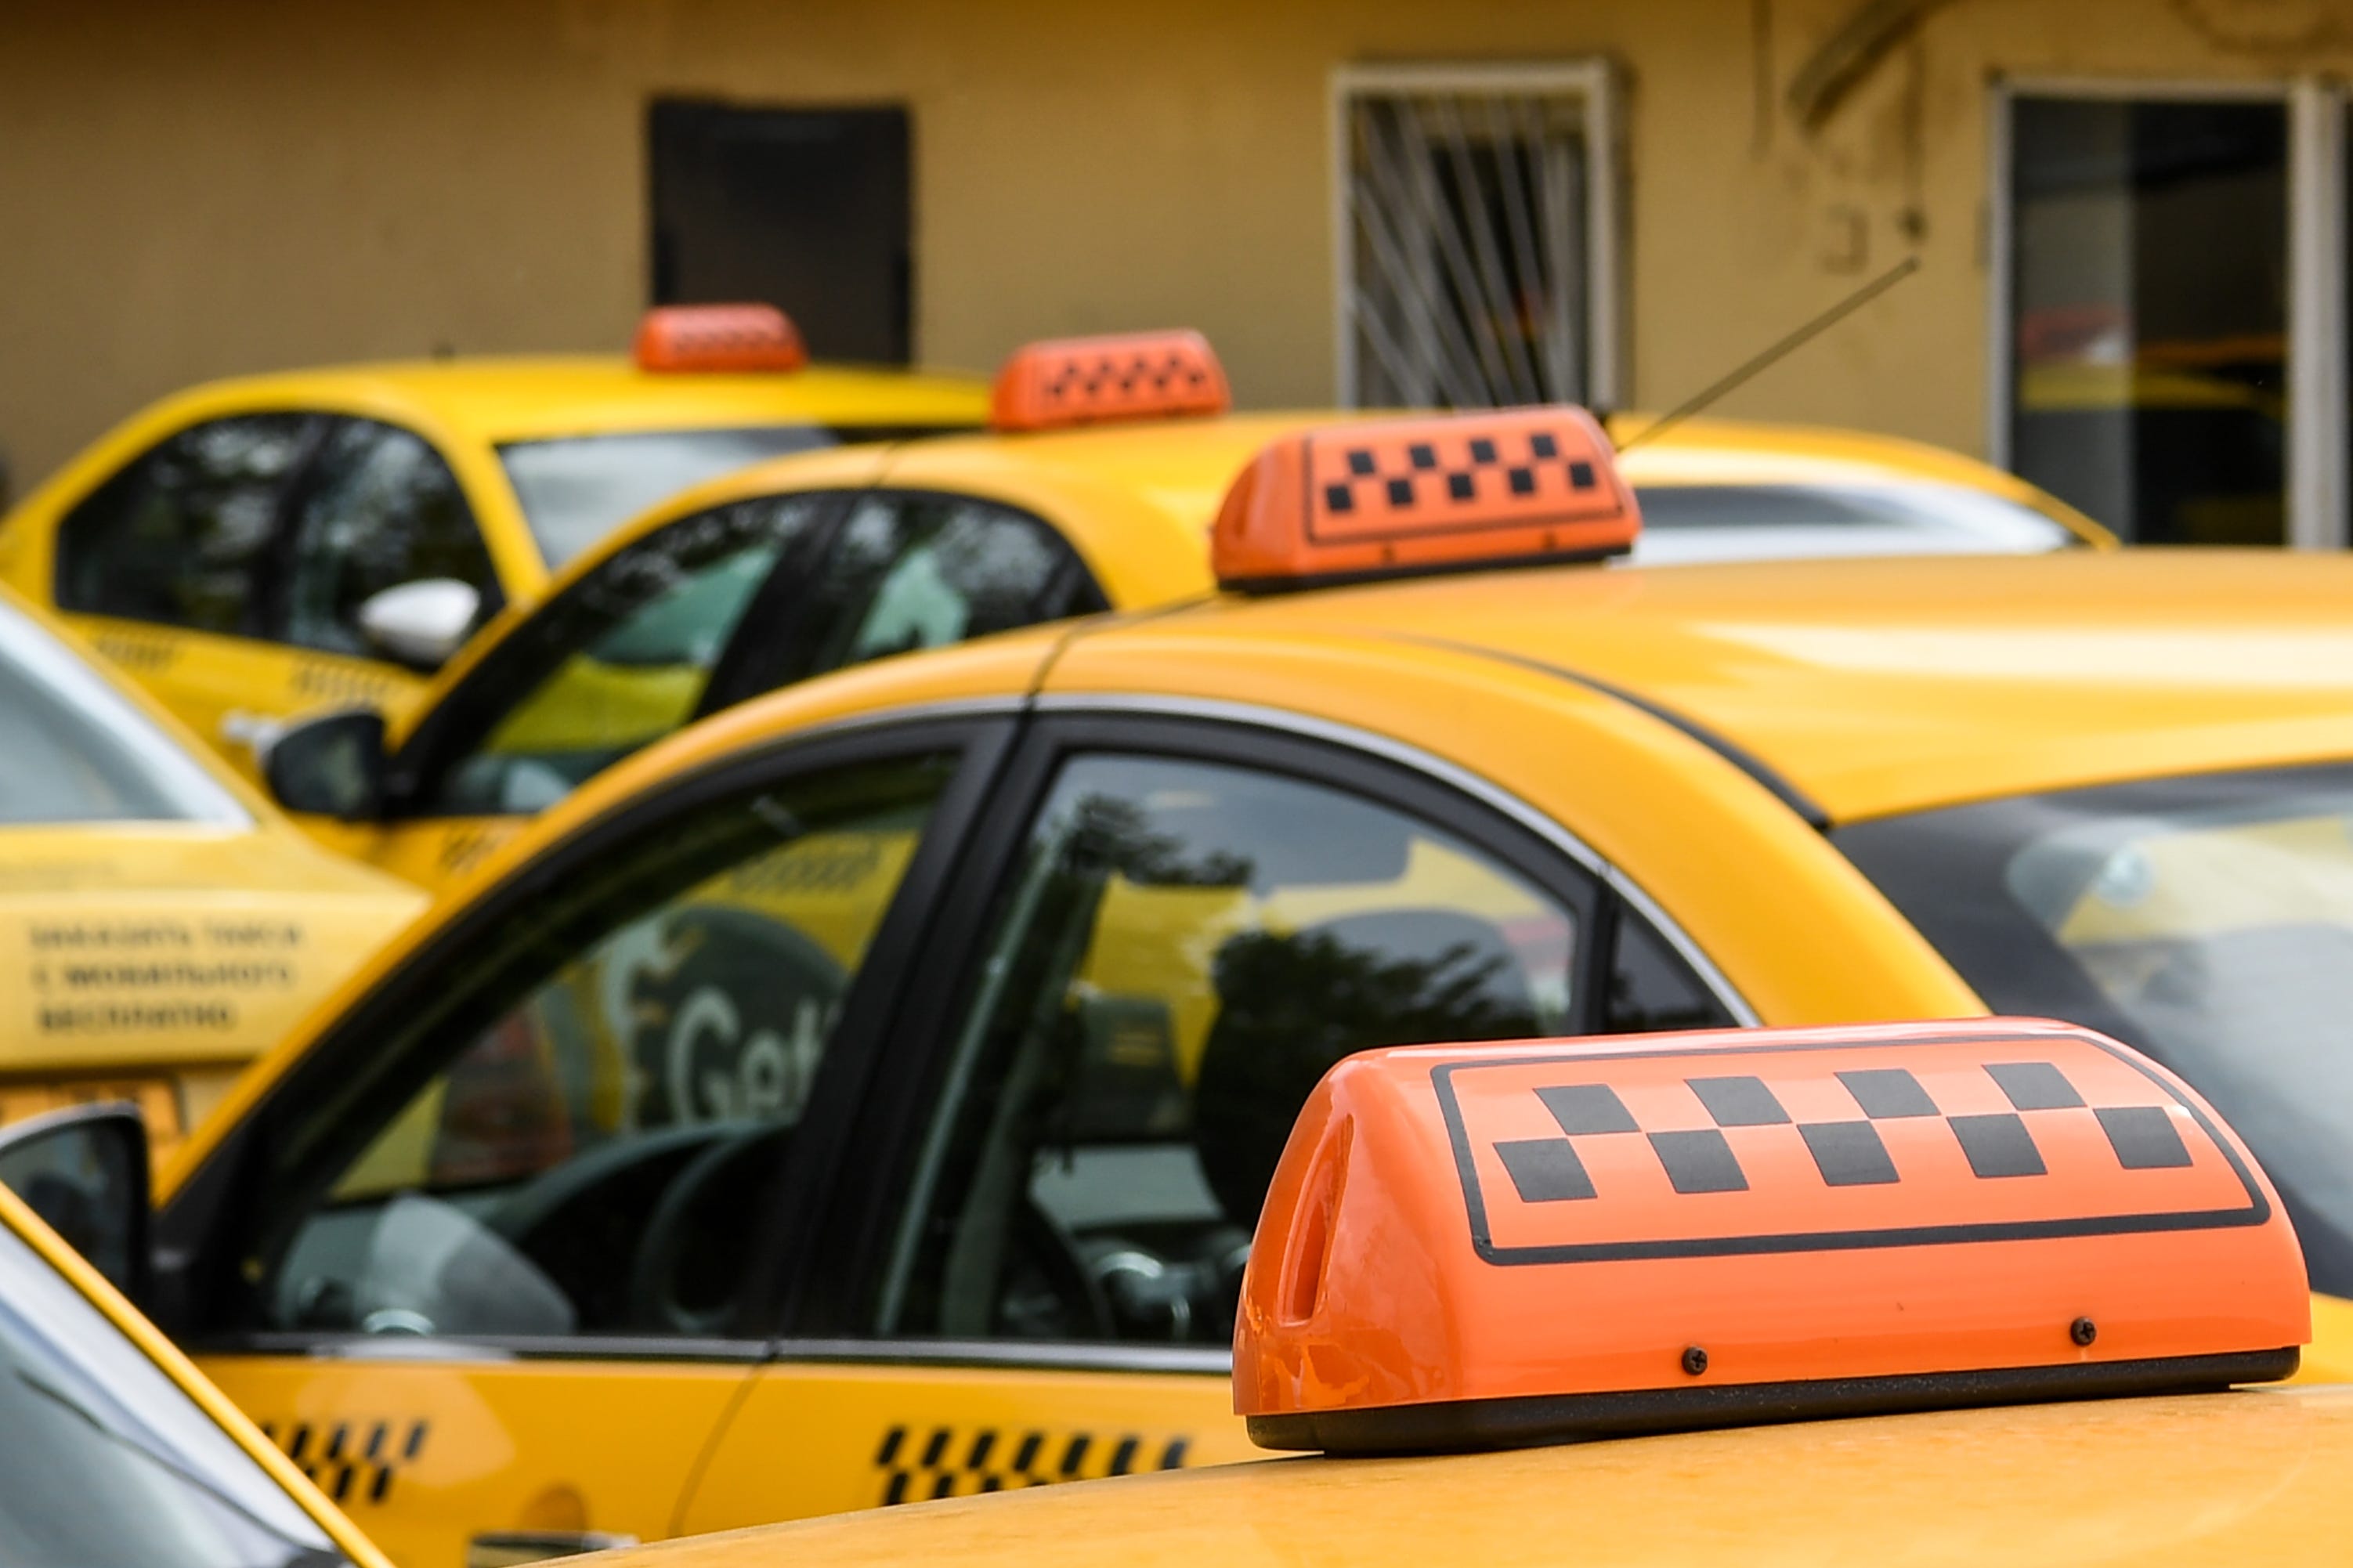 Предложение таксиста. Такси. Стоянка такси. Машина "такси". Шашечки такси на машине.